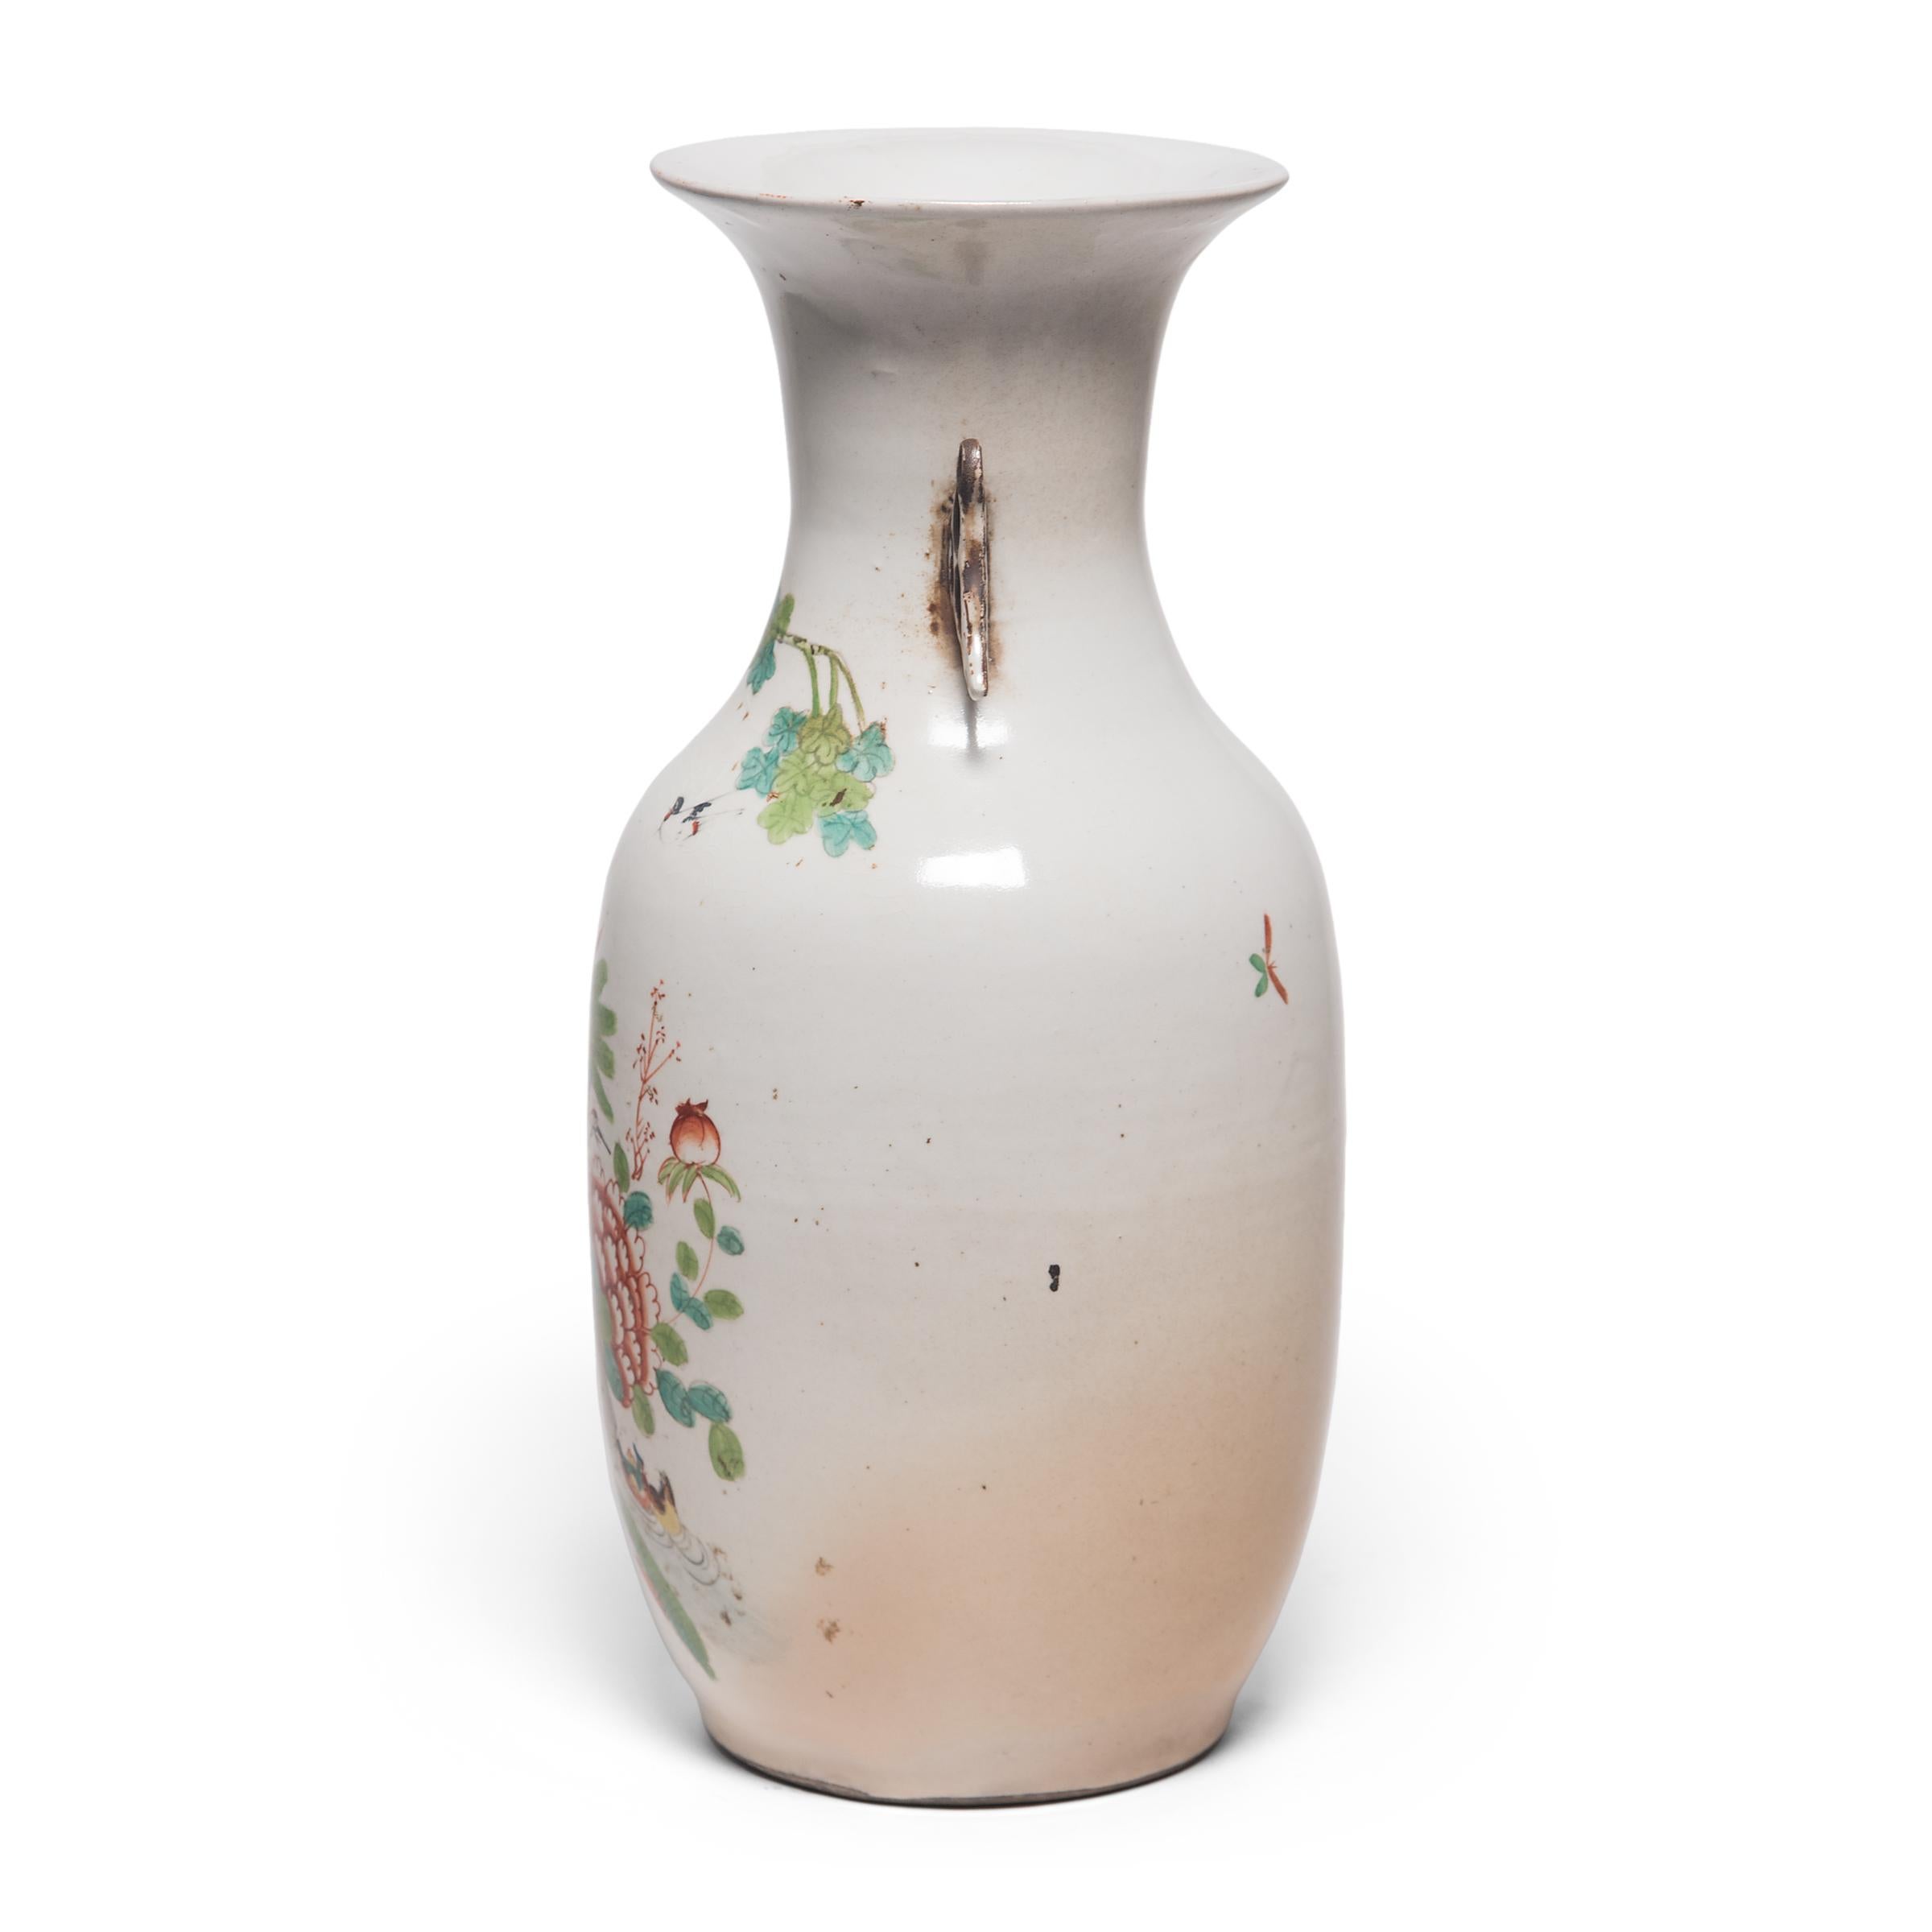 Le vase queue de phénix date de l'âge du bronze et est resté une forme populaire pour ses lignes épurées et ses courbes gracieuses. Datant d'environ 1900, ce vase représente un paon dans un joli cadre de jardin. Somptueusement détaillé et peint de